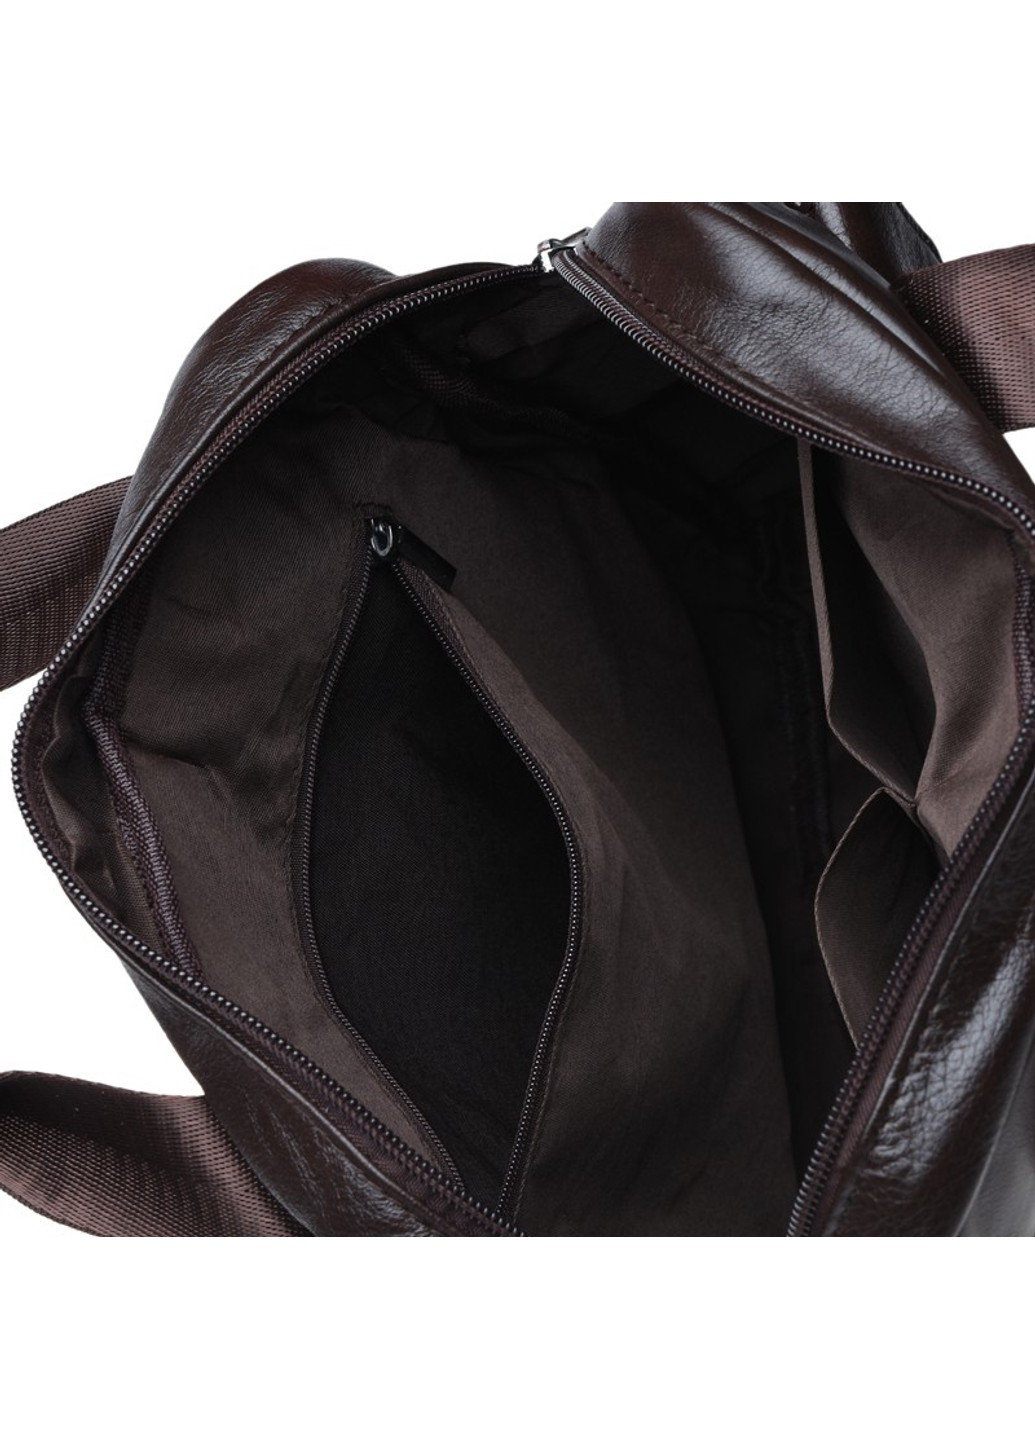 Мужская кожаная сумка K18863-brown Borsa Leather (271665033)